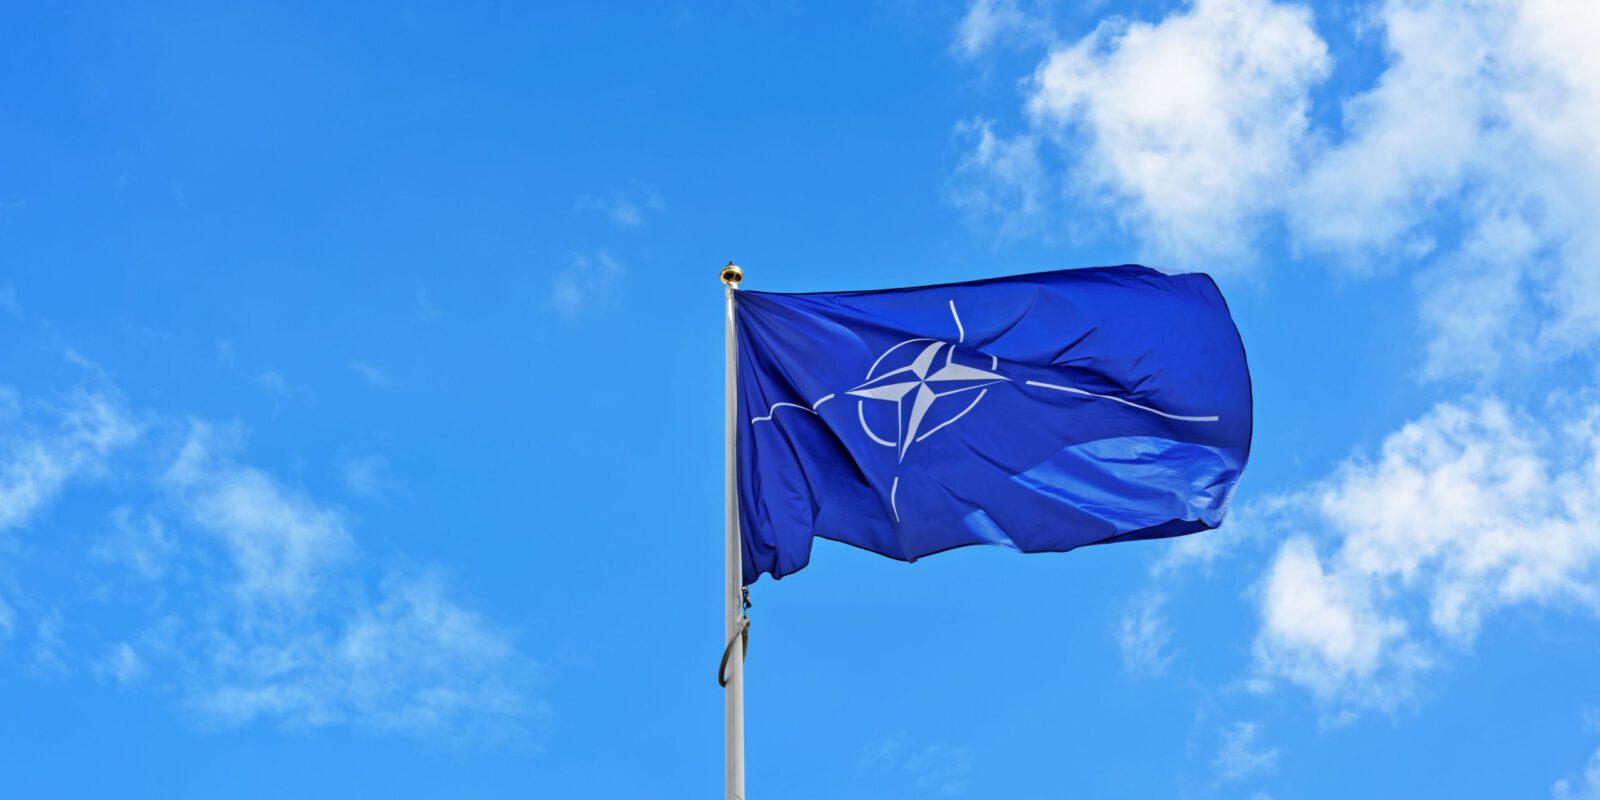 Titelbild: Europas Sicherheit: In der europäischen NATO-Armee